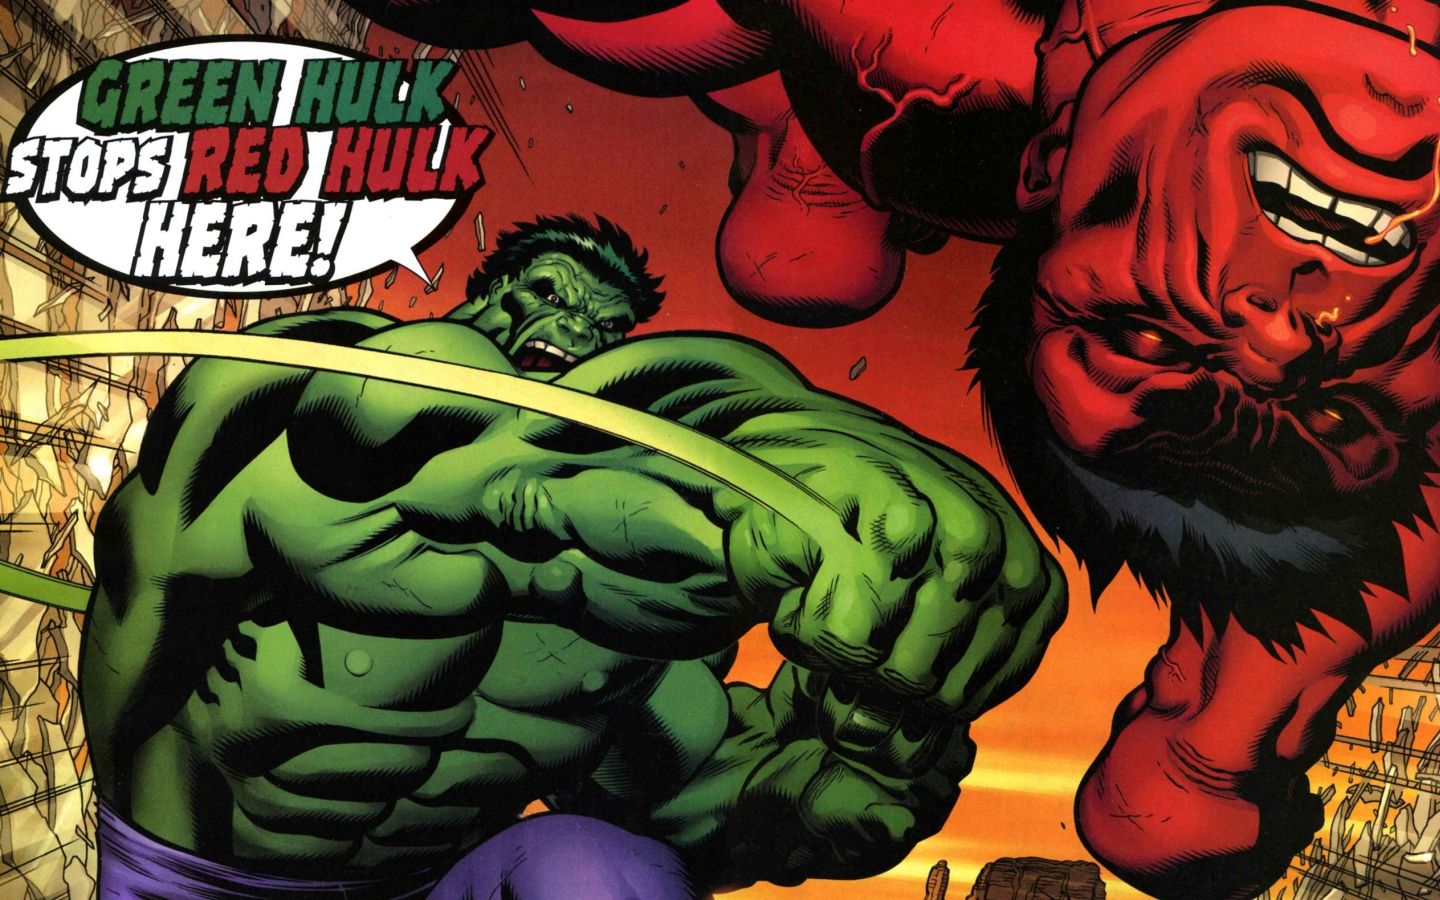 Green Hulk vs Red Hulk in Marvel Comics